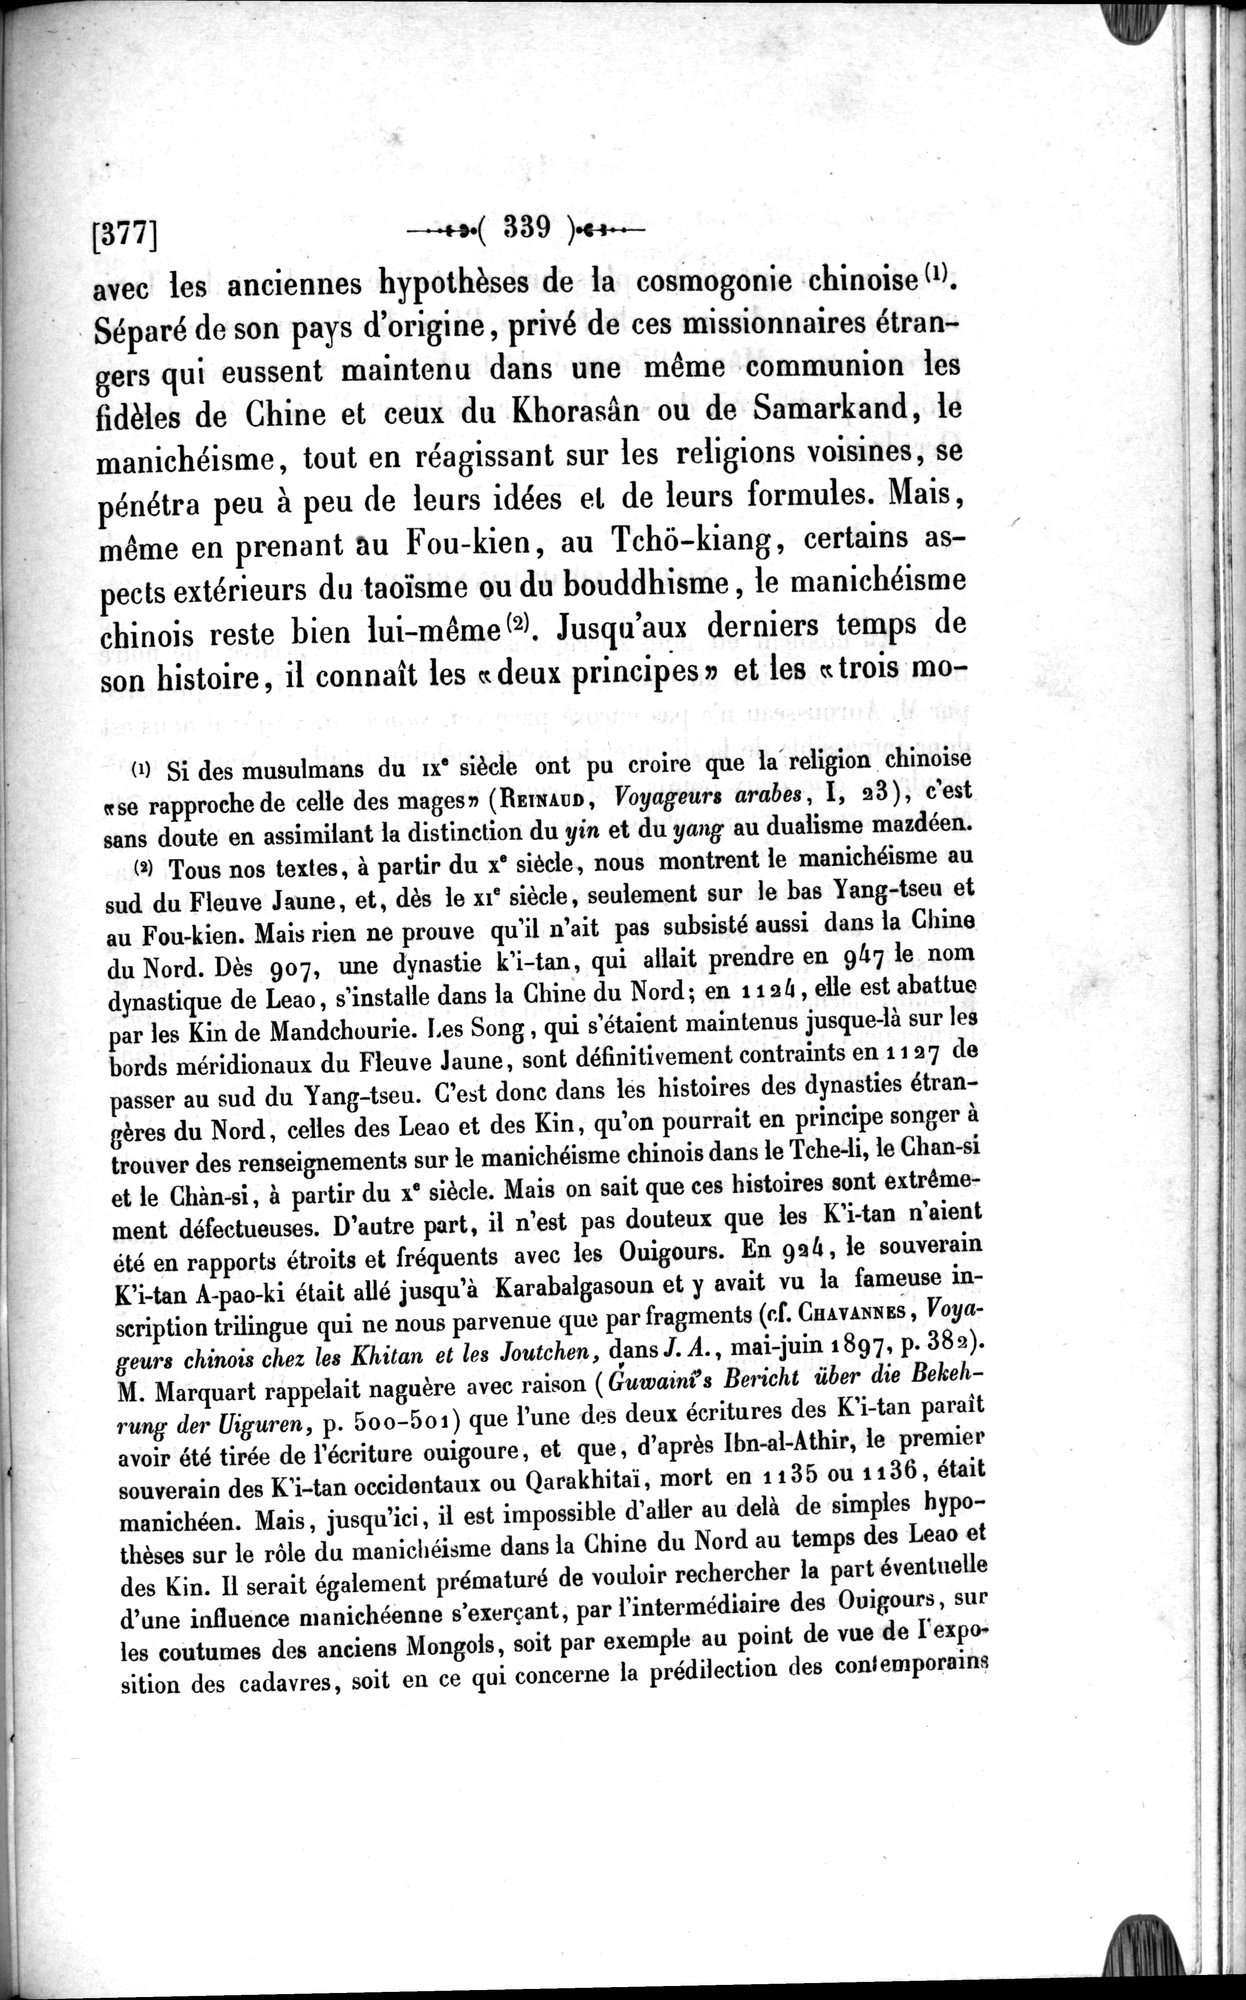 Un traité manichéen retrouvé en Chine : vol.1 / Page 349 (Grayscale High Resolution Image)